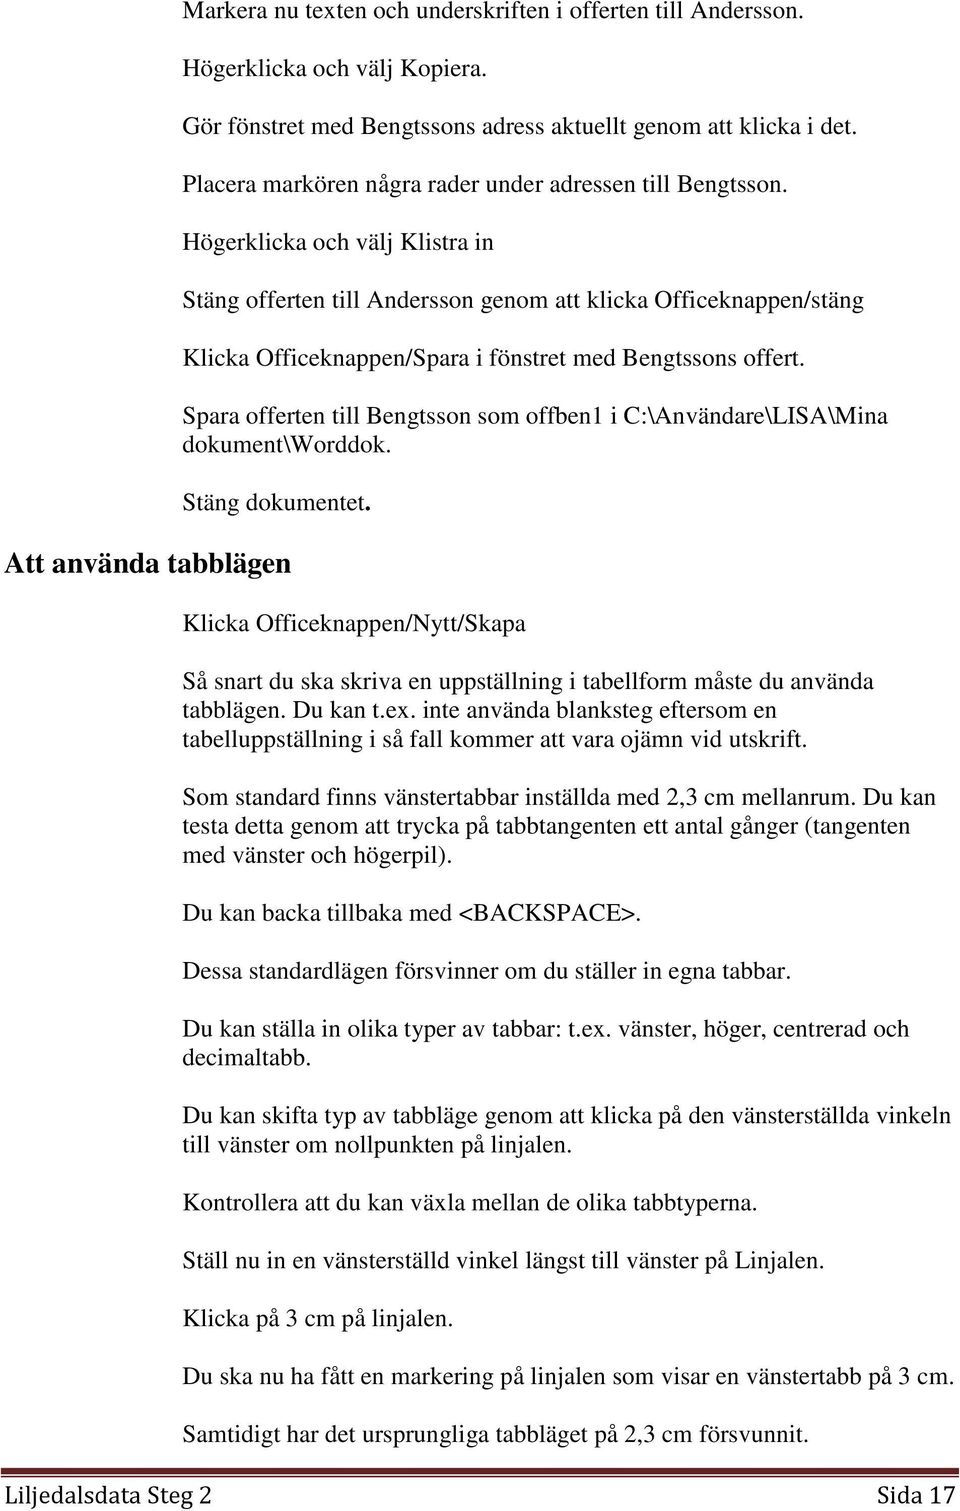 Högerklicka och välj Klistra in Stäng offerten till Andersson genom att klicka Officeknappen/stäng Klicka Officeknappen/Spara i fönstret med Bengtssons offert.